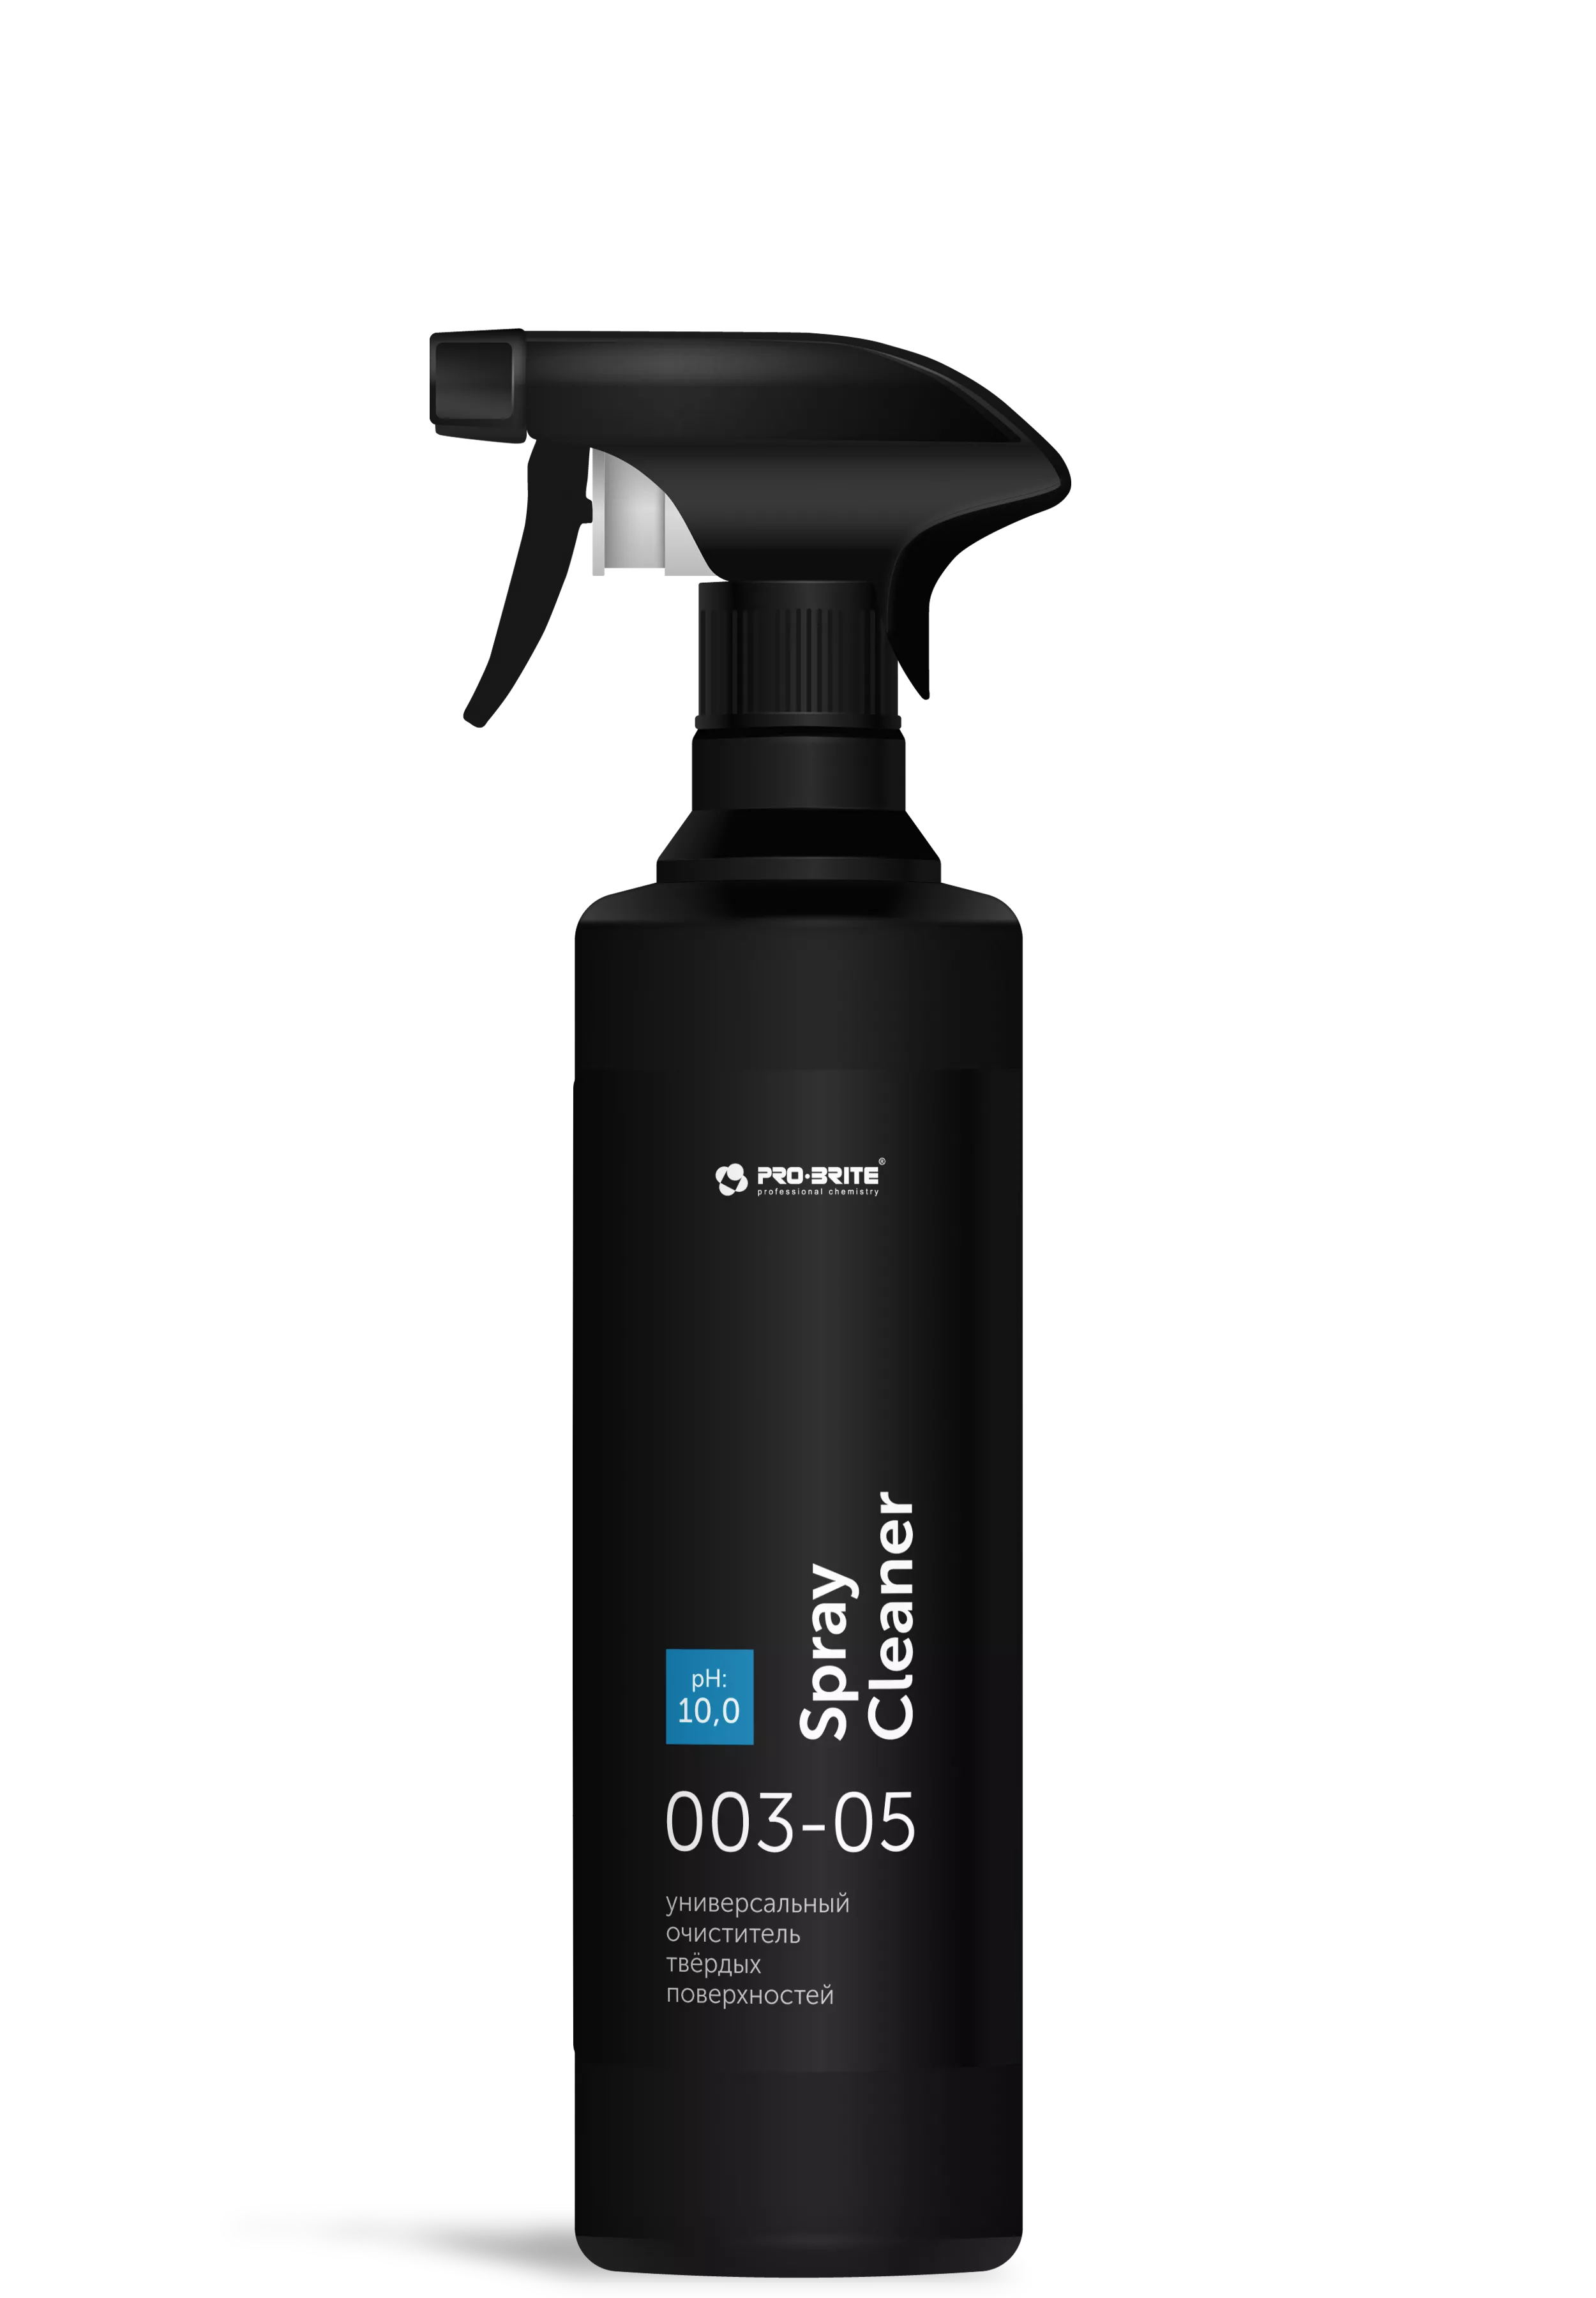 Spray Cleaner  универсальный очиститель твёрдых поверхностей,  готовый к применению препарат, 0,5л